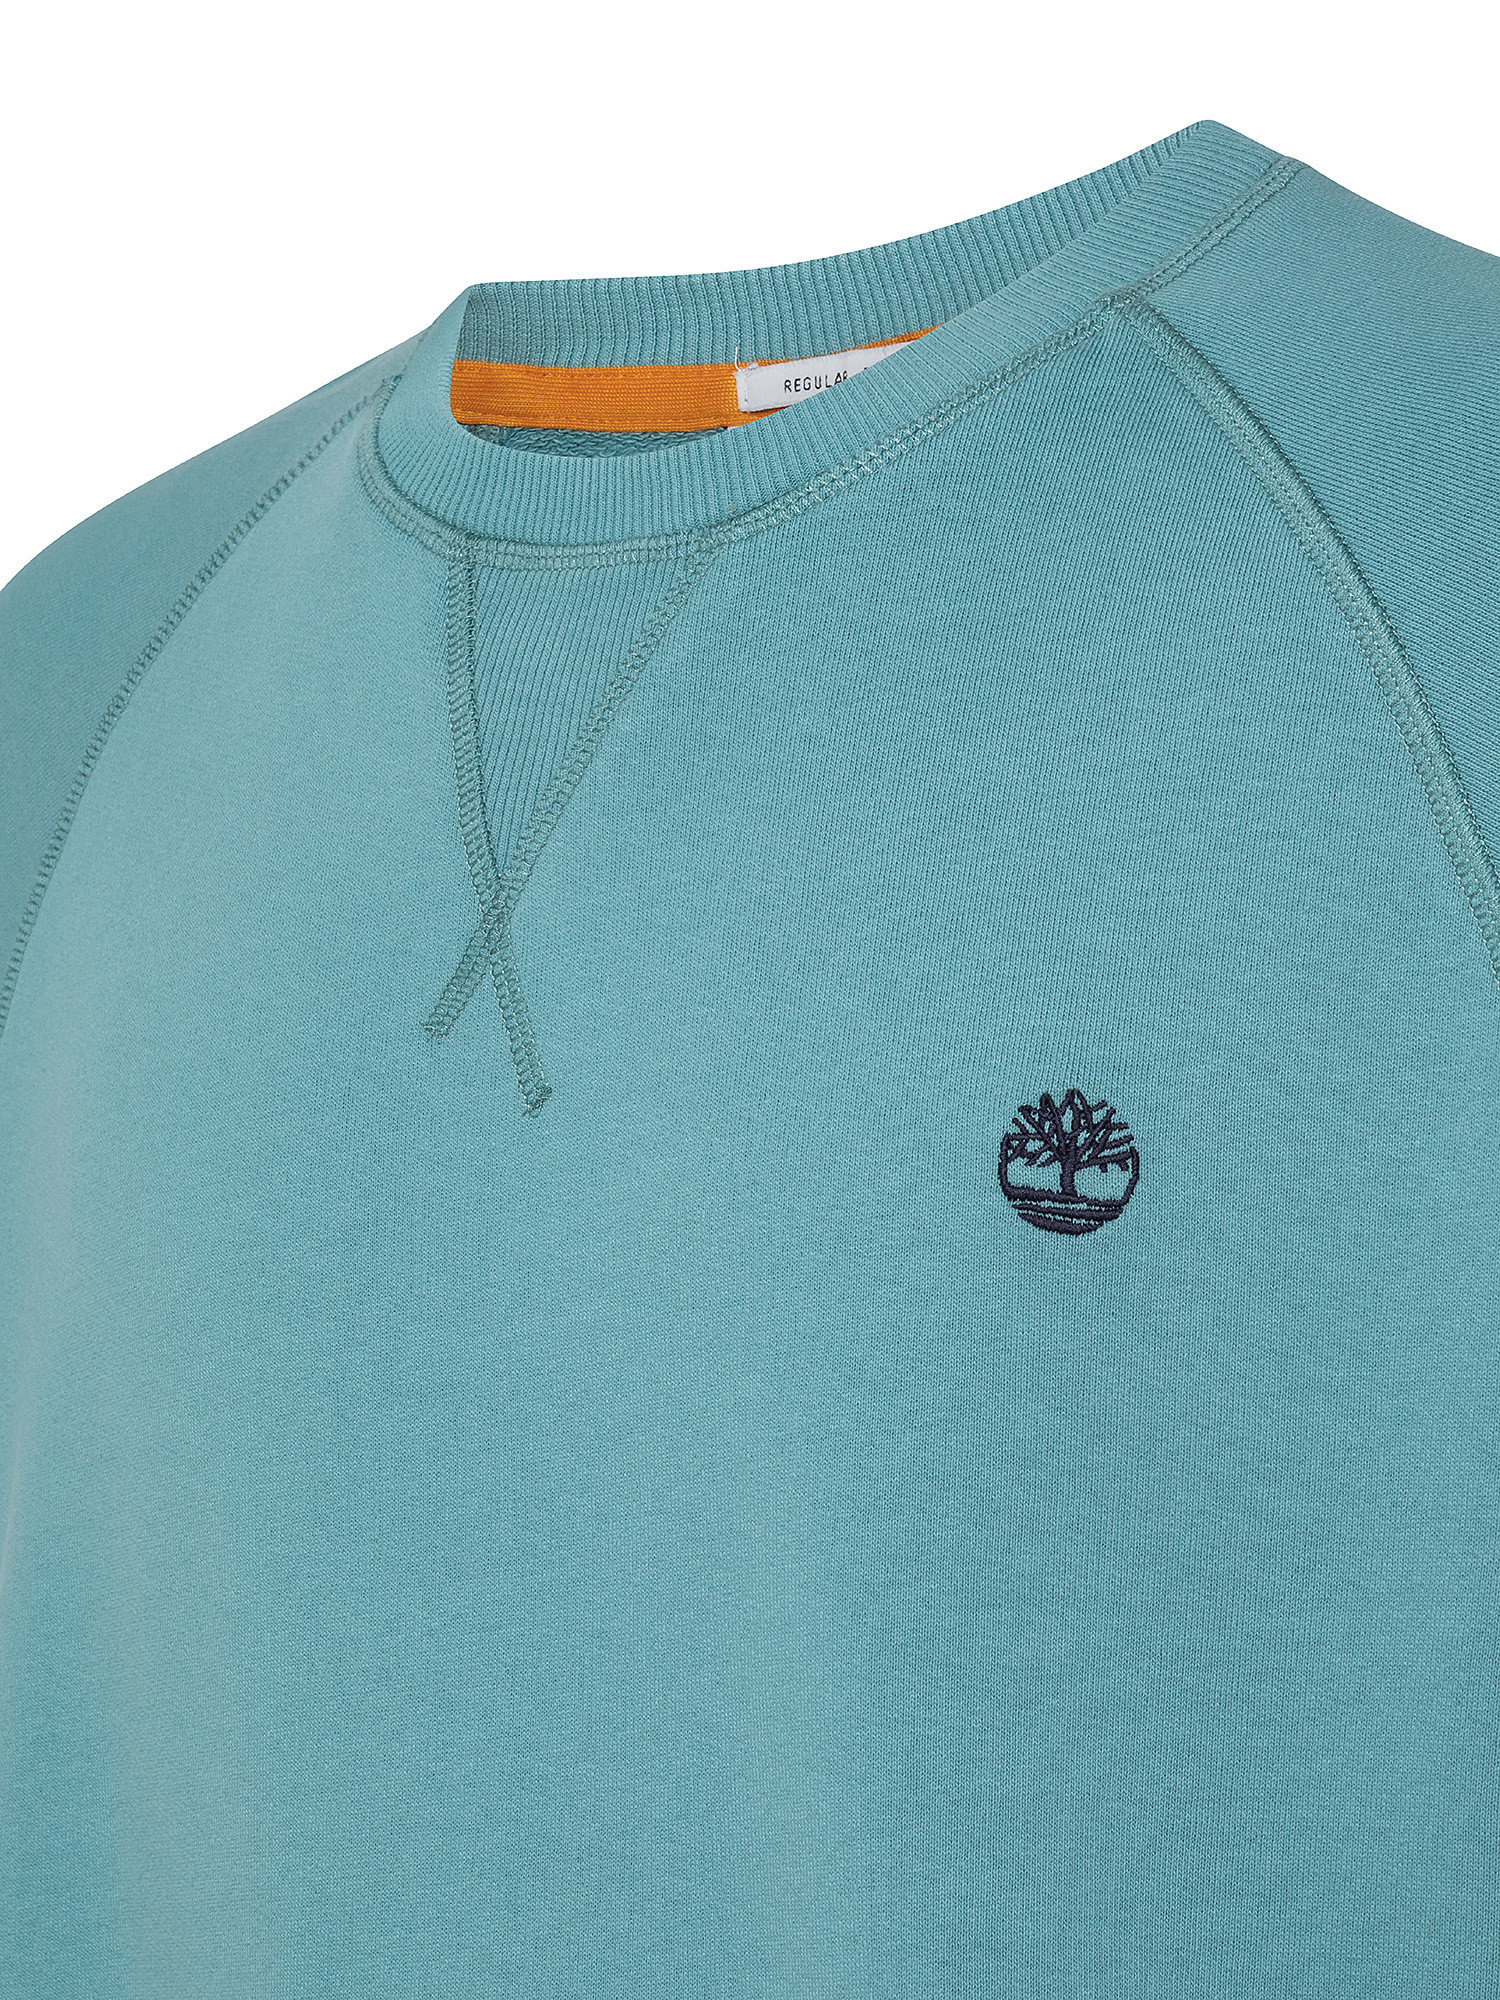 Men's Exeter River Sweatshirt, Light Blue, large image number 2